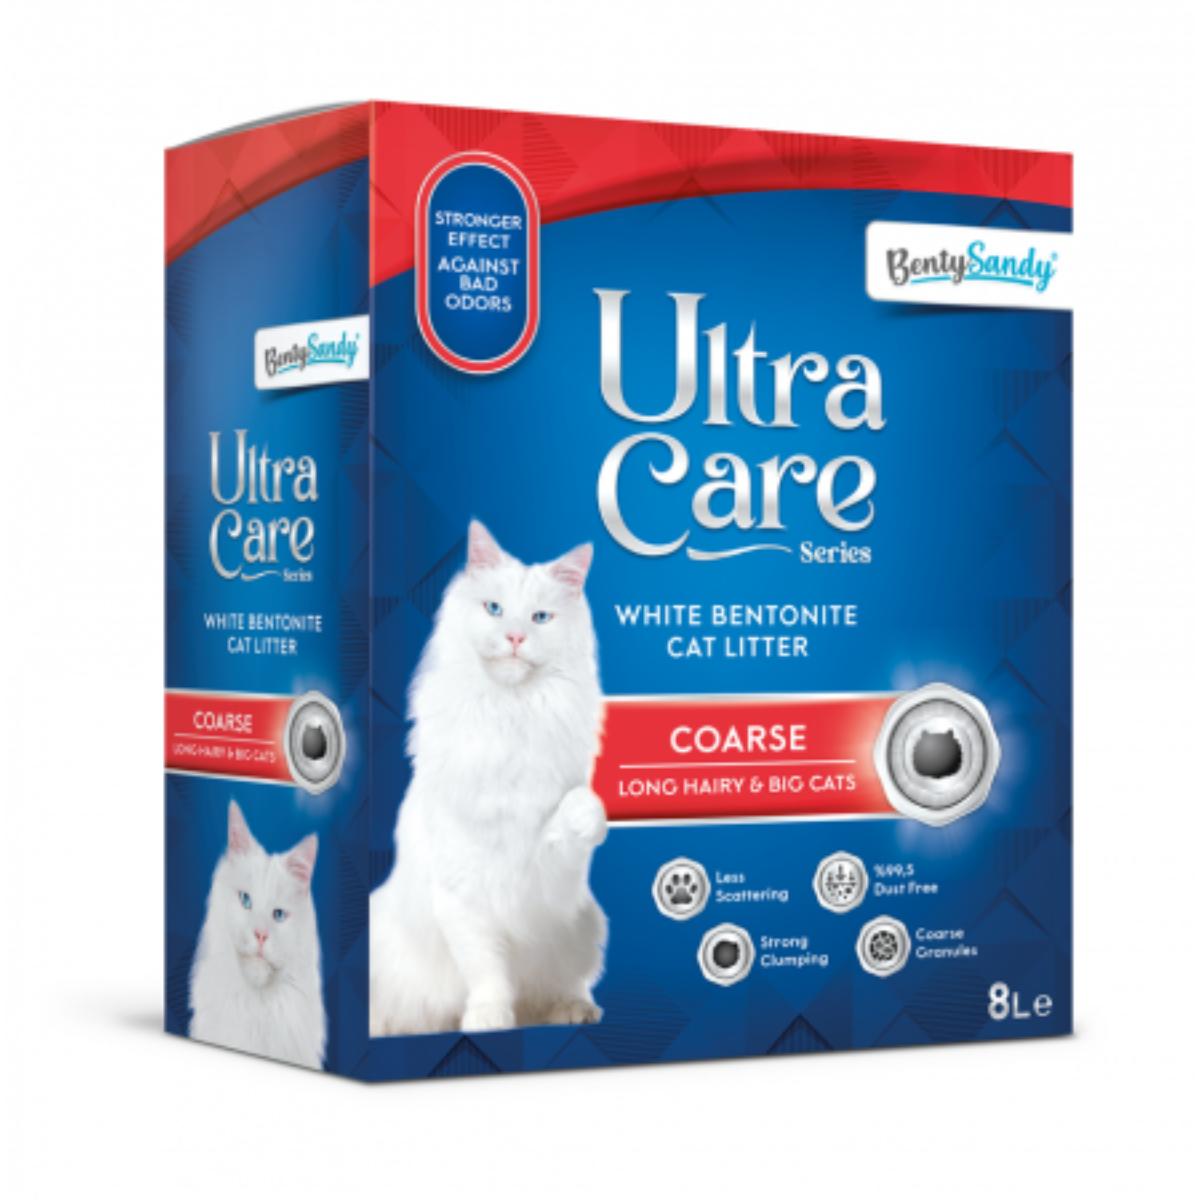 BENTY SANDY Ultra Care Coarse for Long Hair, Fresh, așternut igienic pisici, granule, bentonită, aglomerant, neutralizare mirosuri, 8l